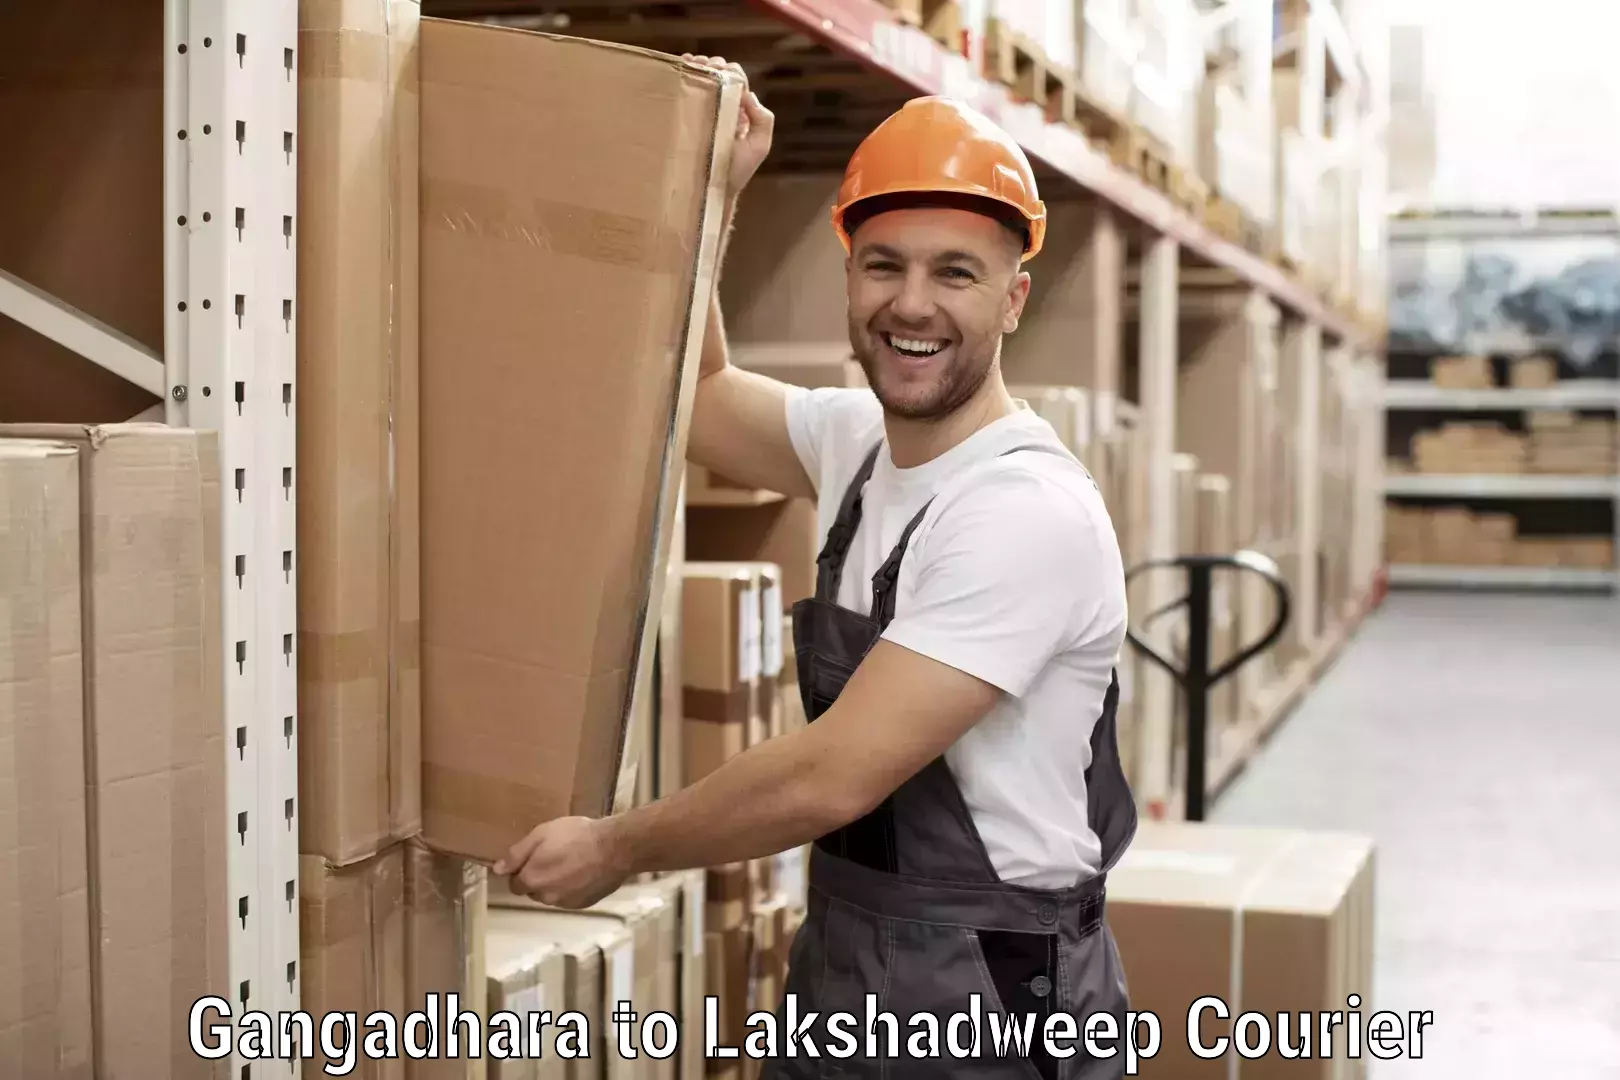 Affordable shipping solutions Gangadhara to Lakshadweep